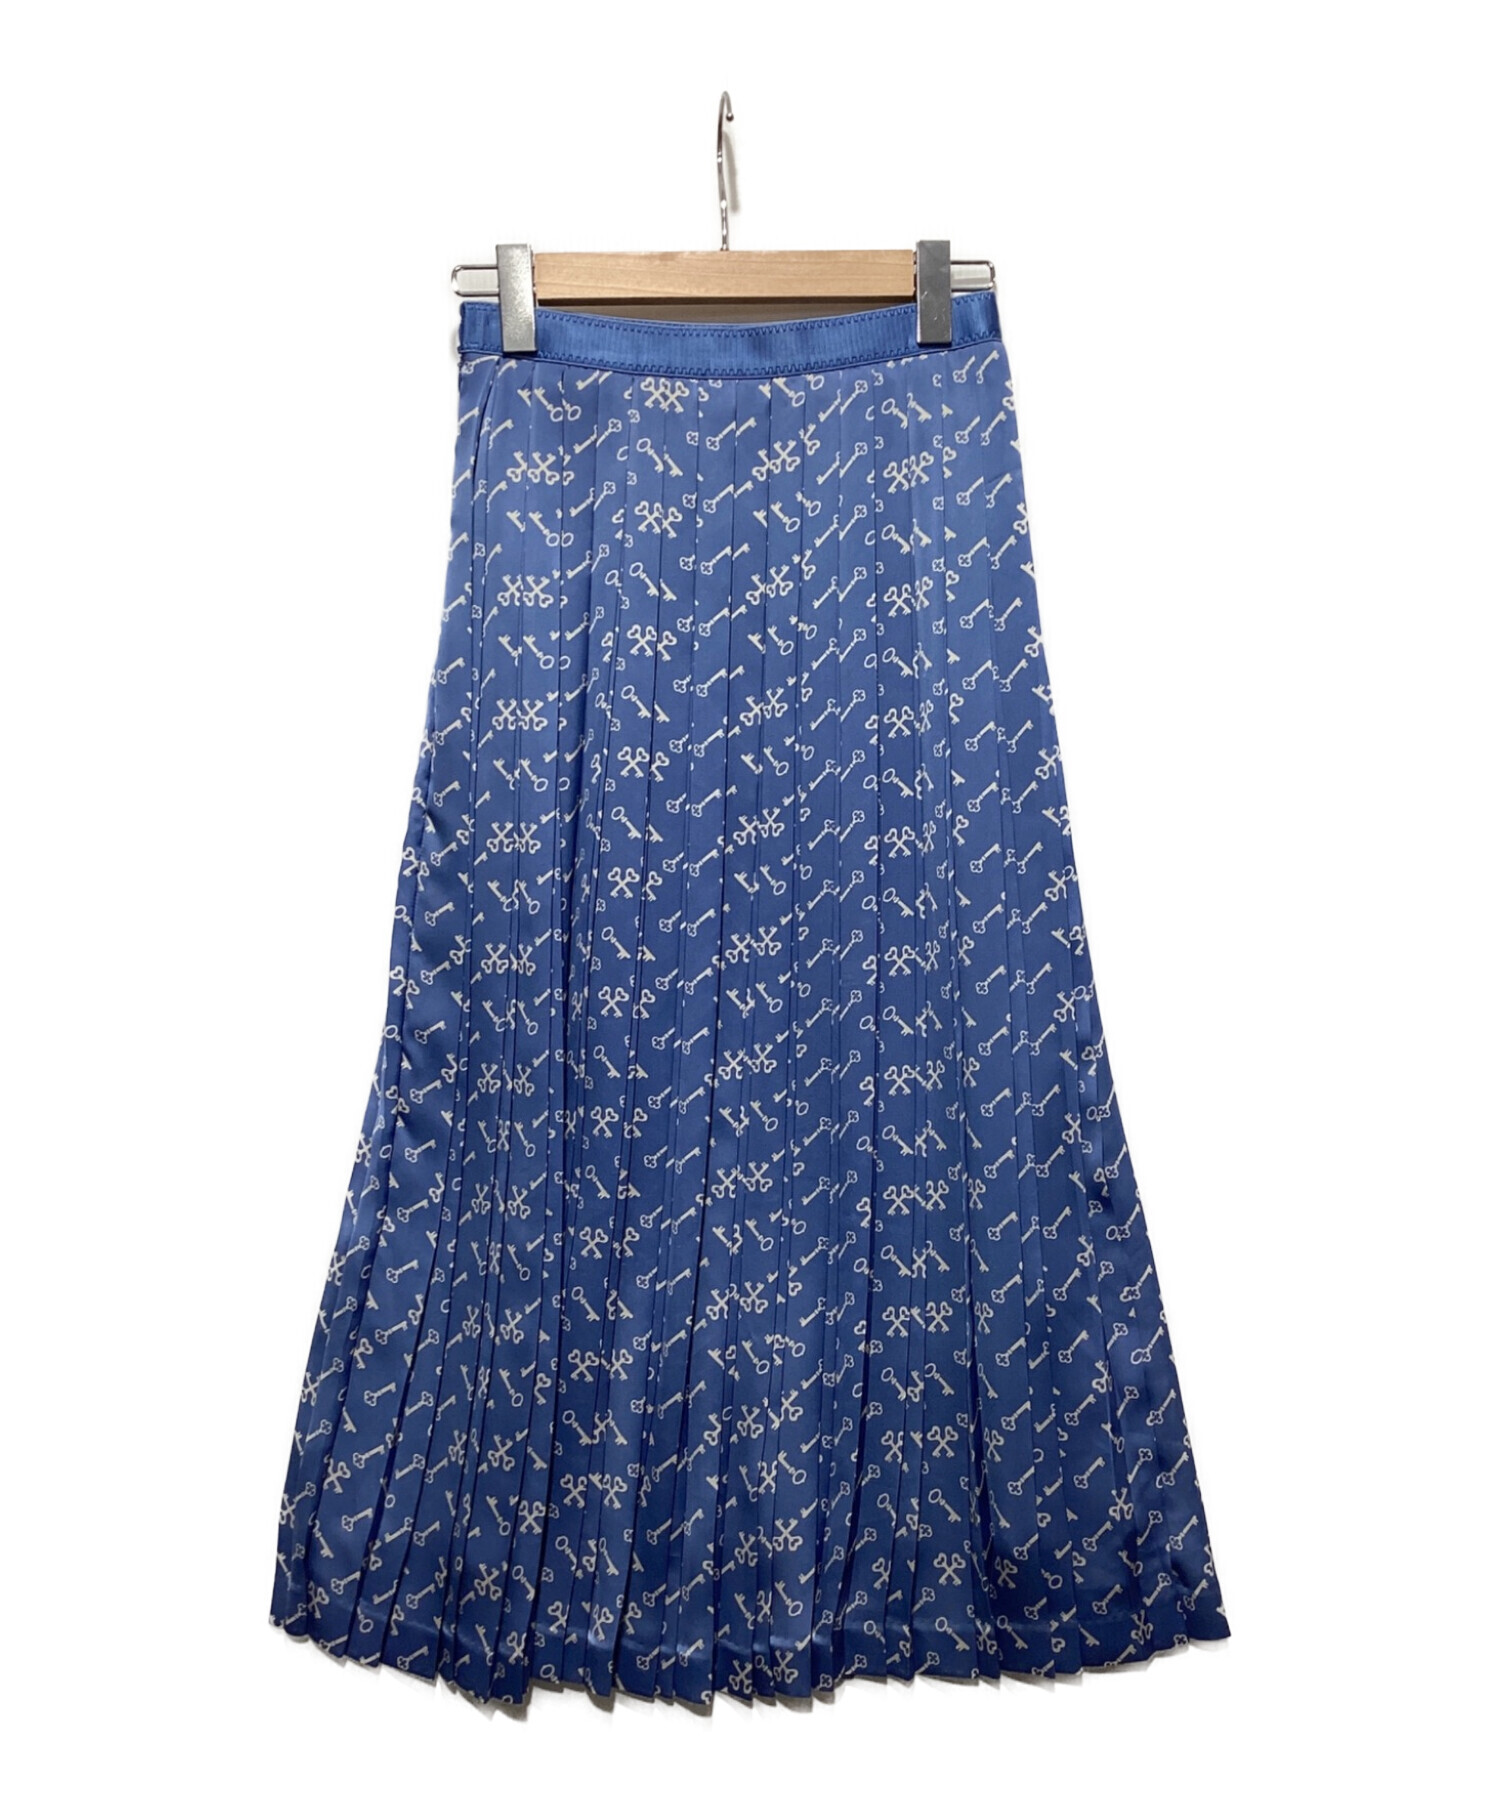 ANAYI (アナイ) キープリントプリーツスカート ブルー サイズ:38